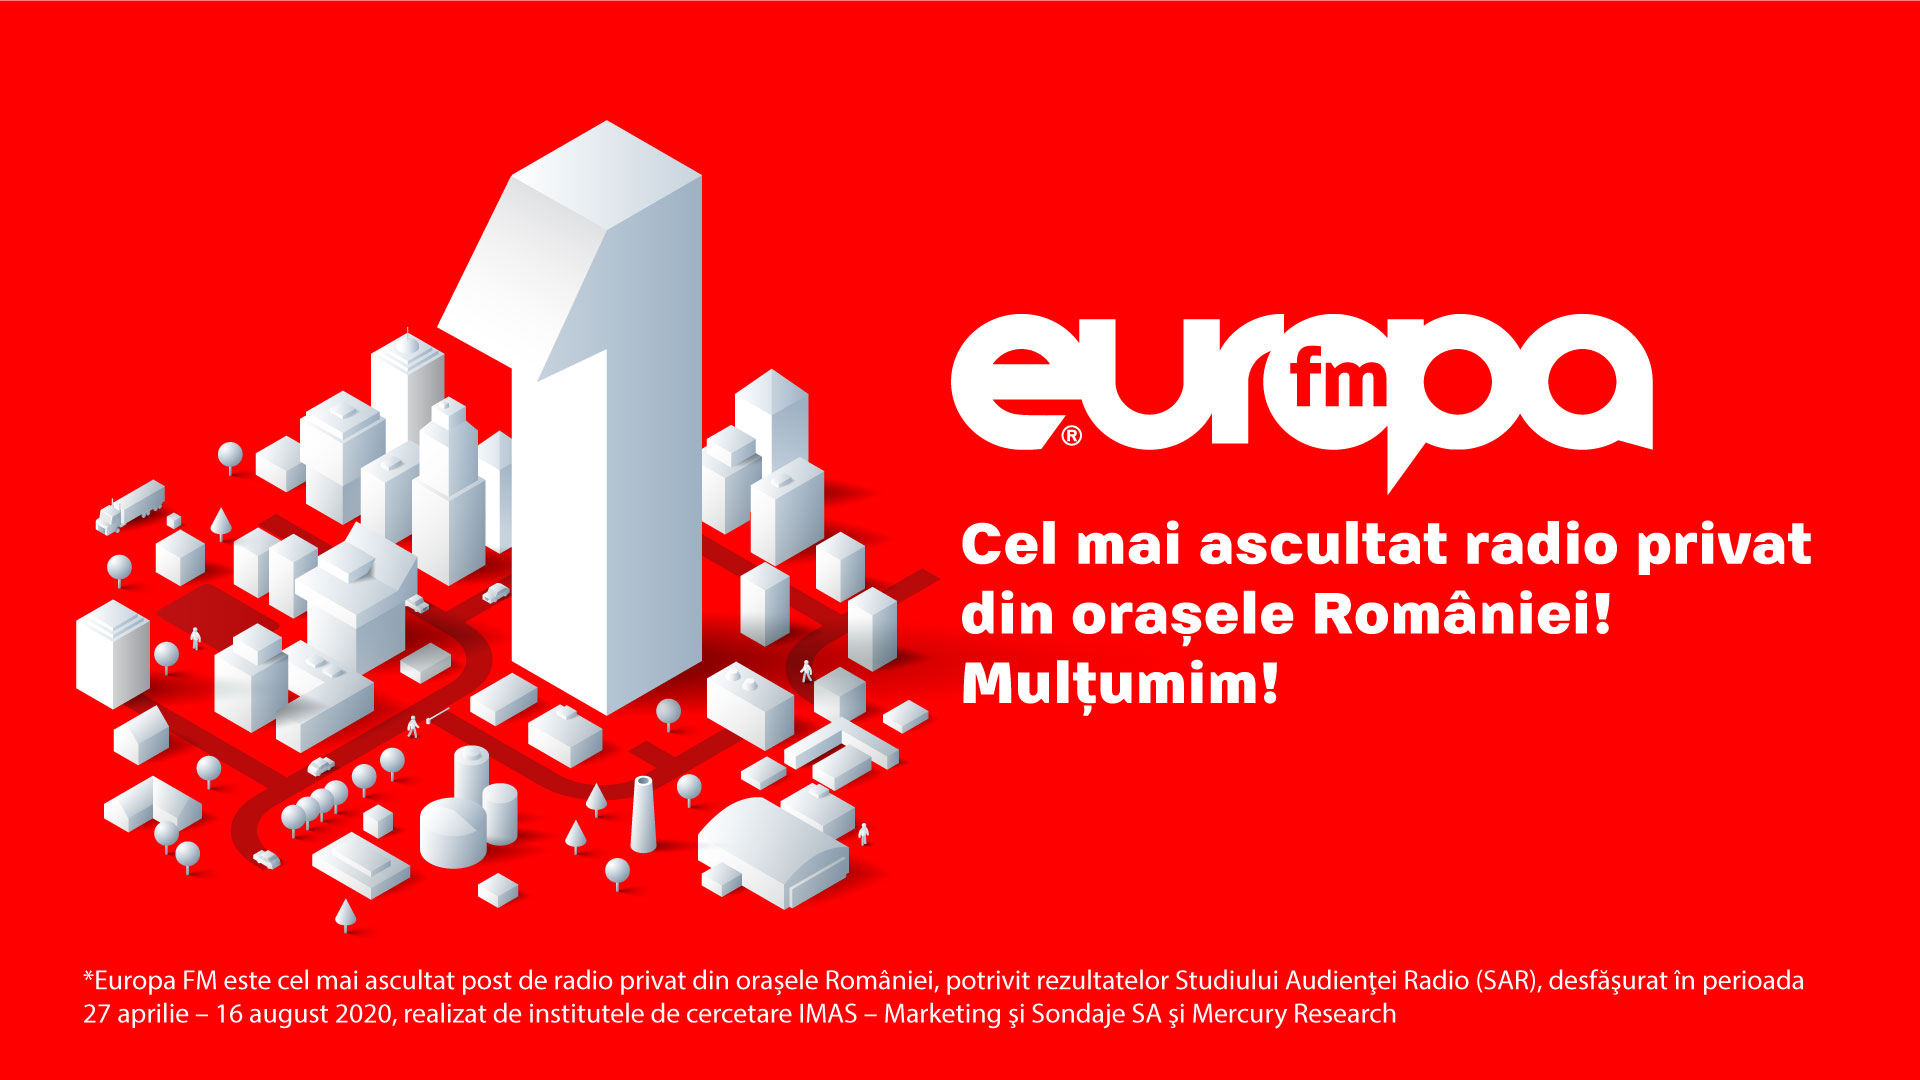 Europa FM este cel mai ascultat post de radio privat în orașele din România